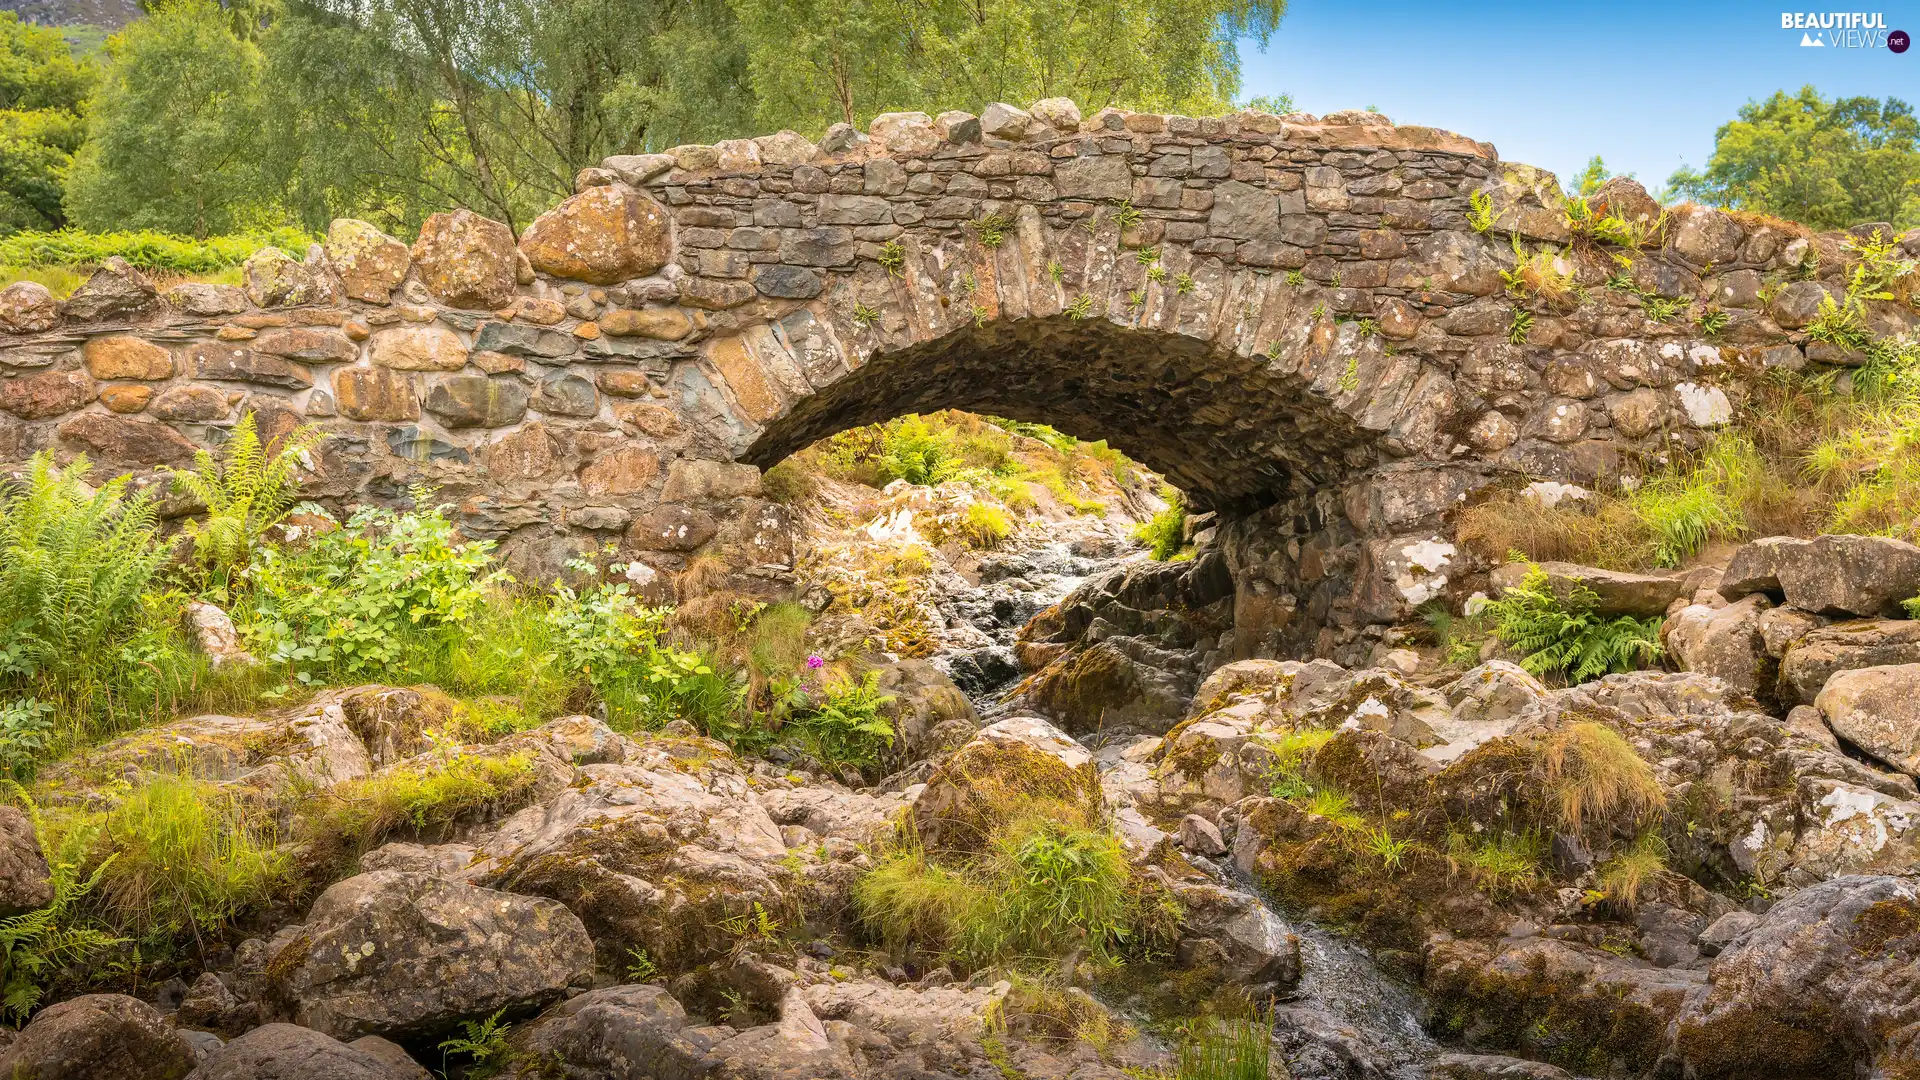 River, Plants, bridge, Stones, stone